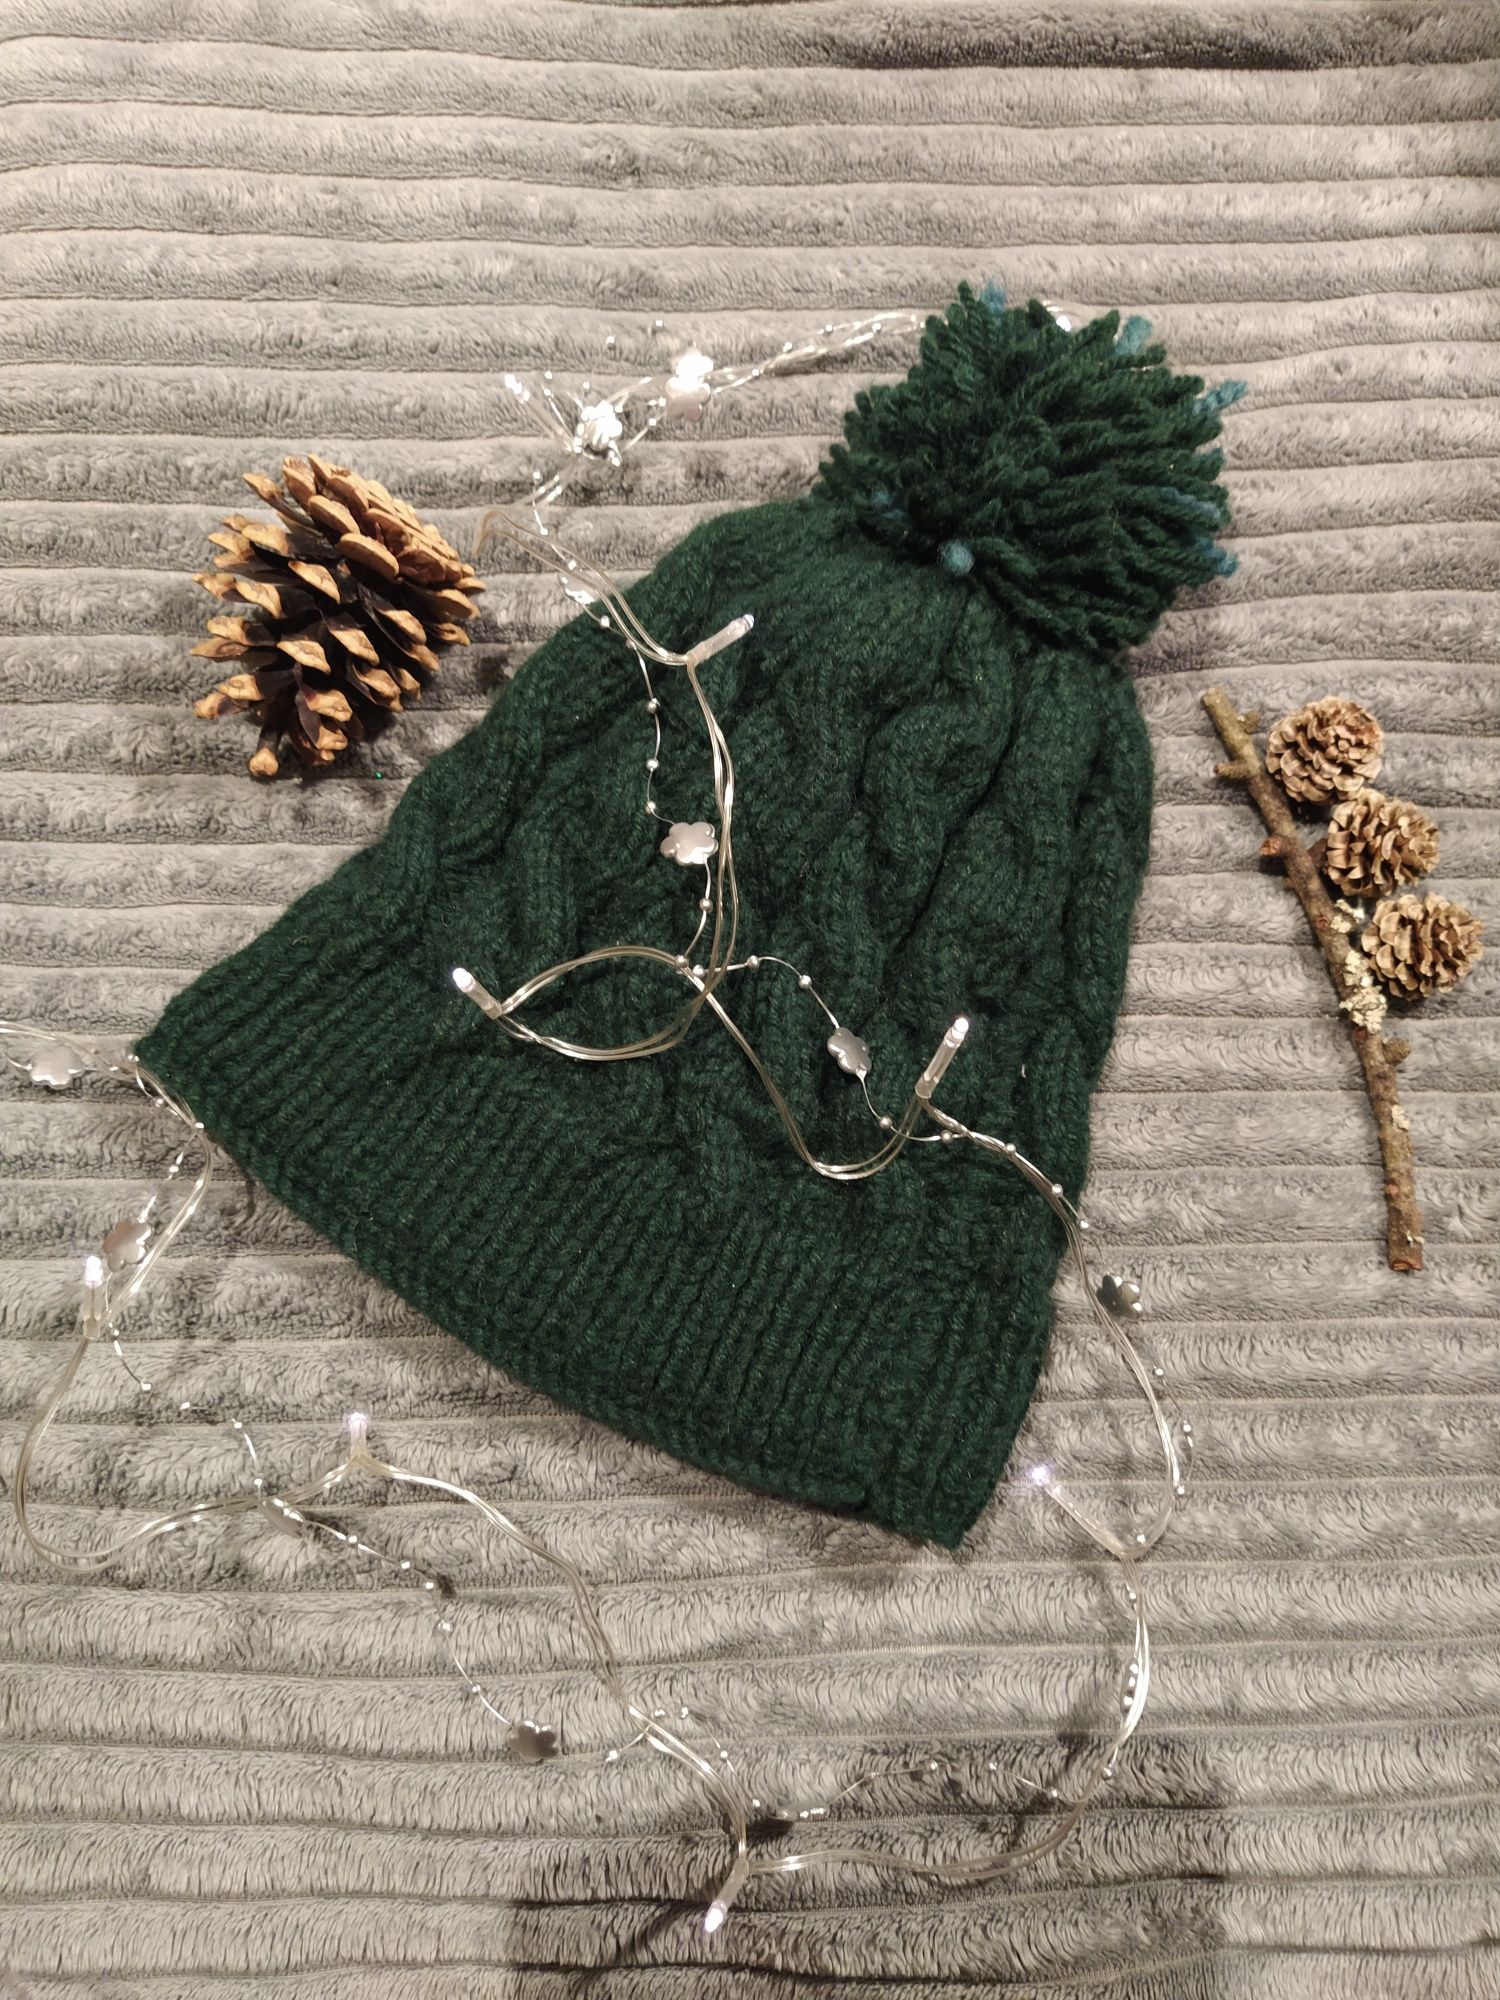 Zielona czapka handmade